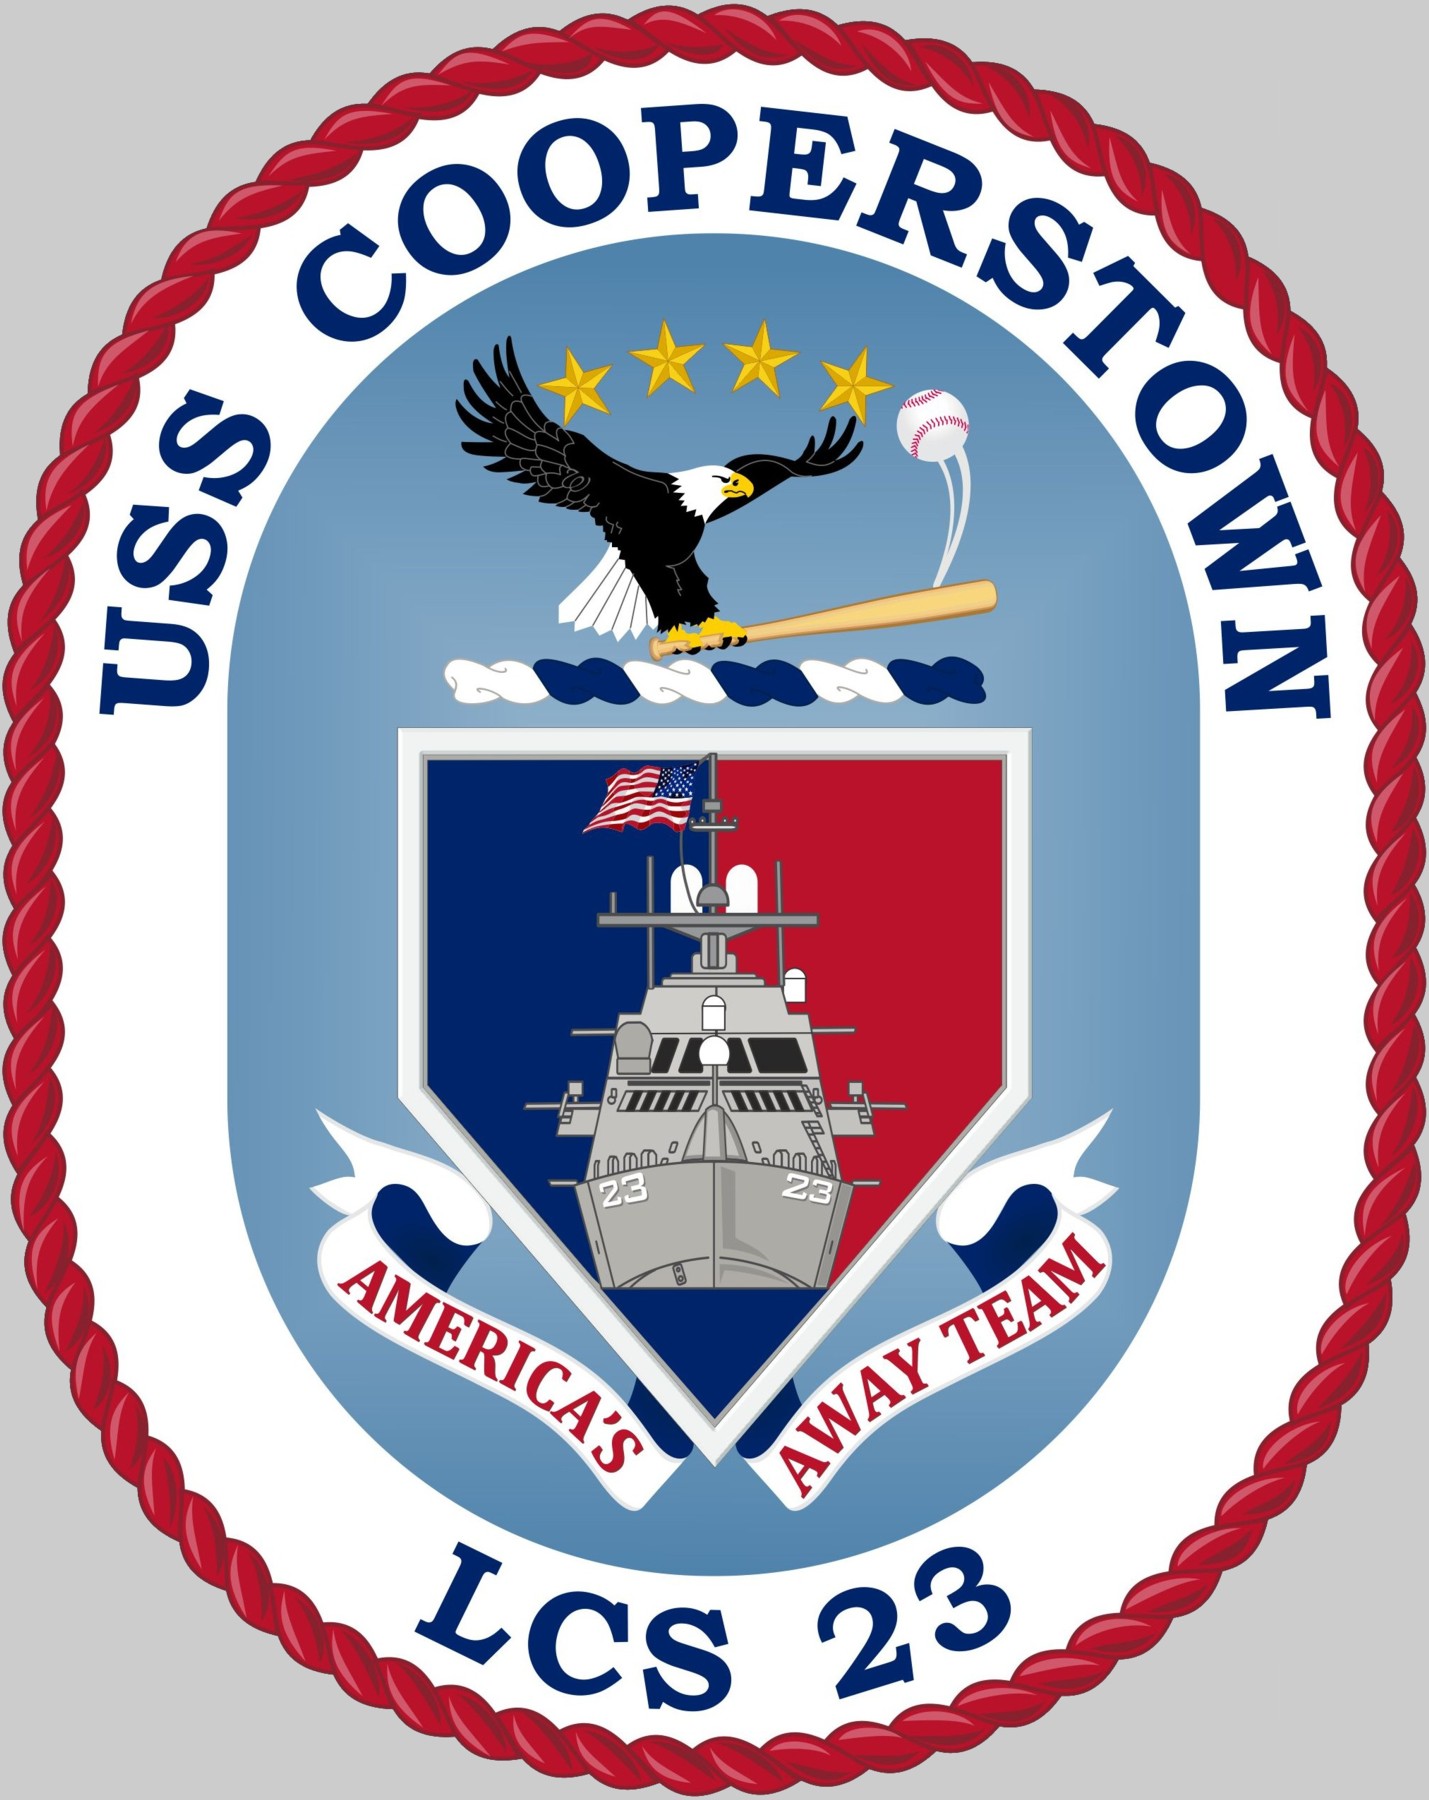 LCS-23-USS-Cooperstown-crest-2.jpg